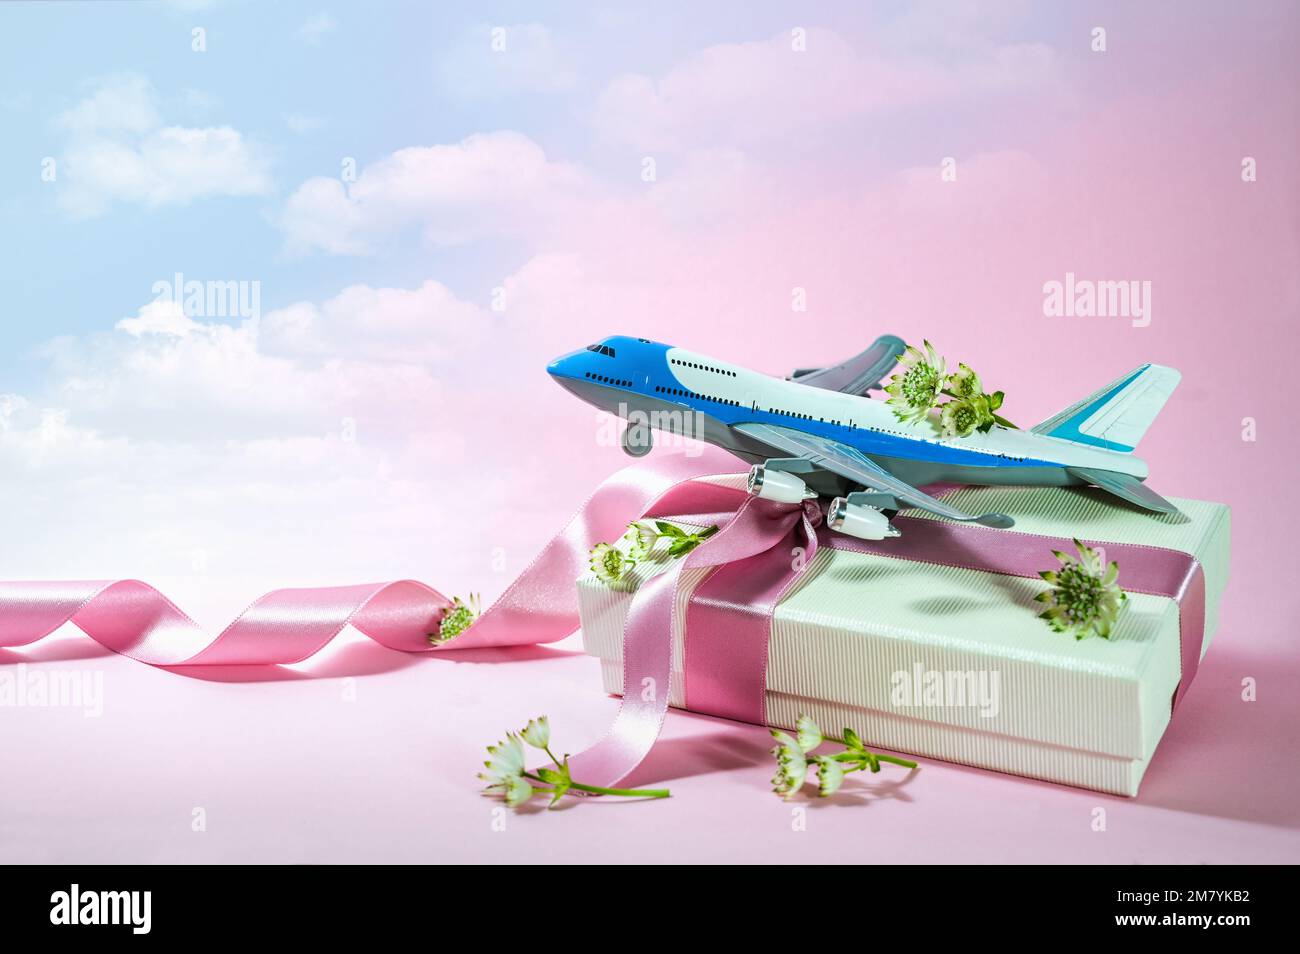 Jouet avion sur une boîte cadeau avec ruban et quelques fleurs, fond rose s'estompe dans un ciel bleu nuageux, voyage et voyage présent pour la Saint Valentin Banque D'Images